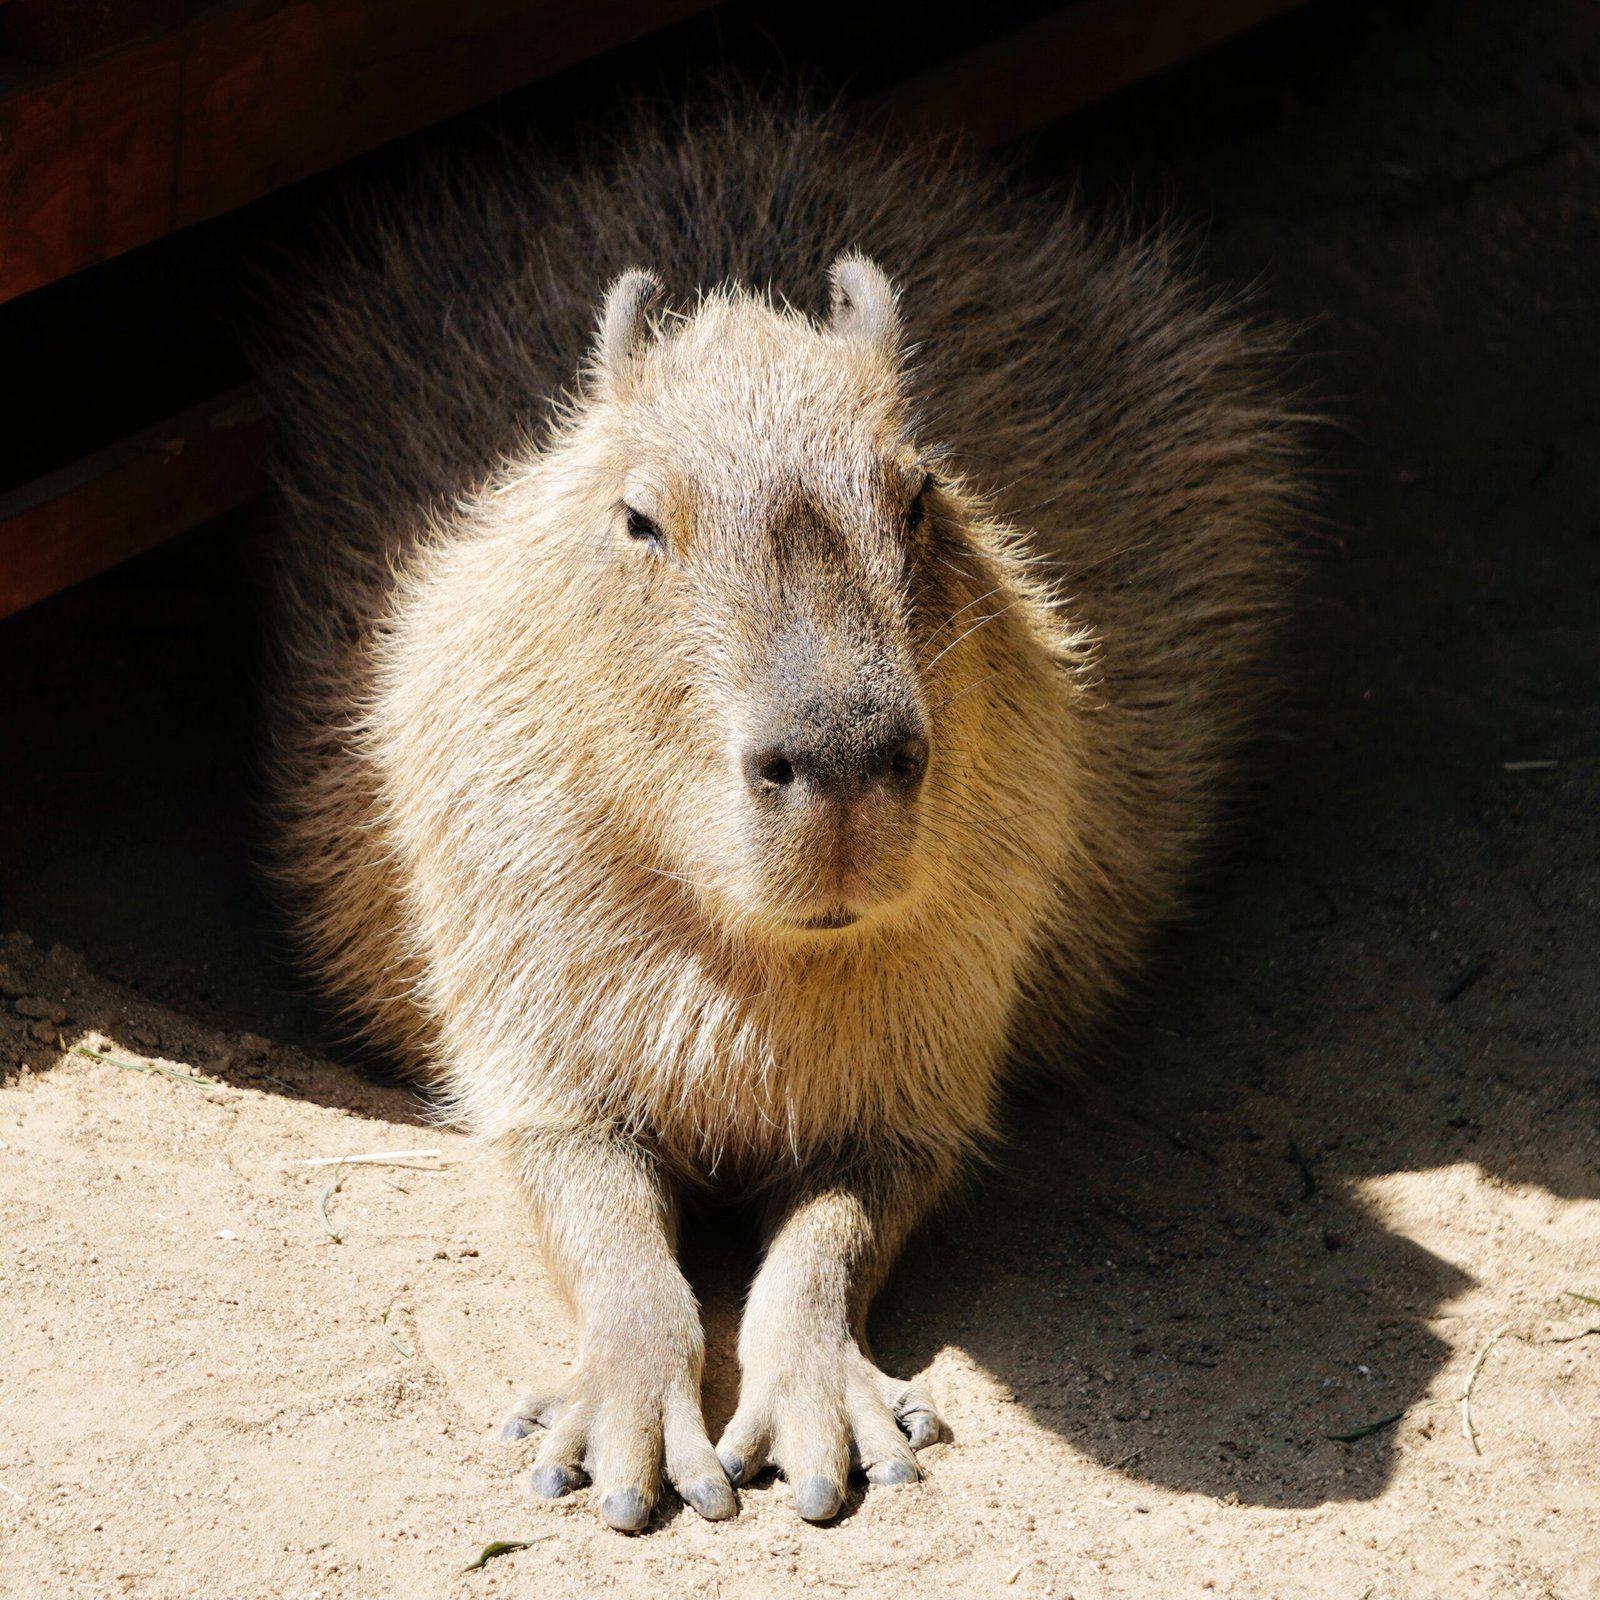 Exploring the Lincoln Park Zoos Fascinating Capybara Exhibit